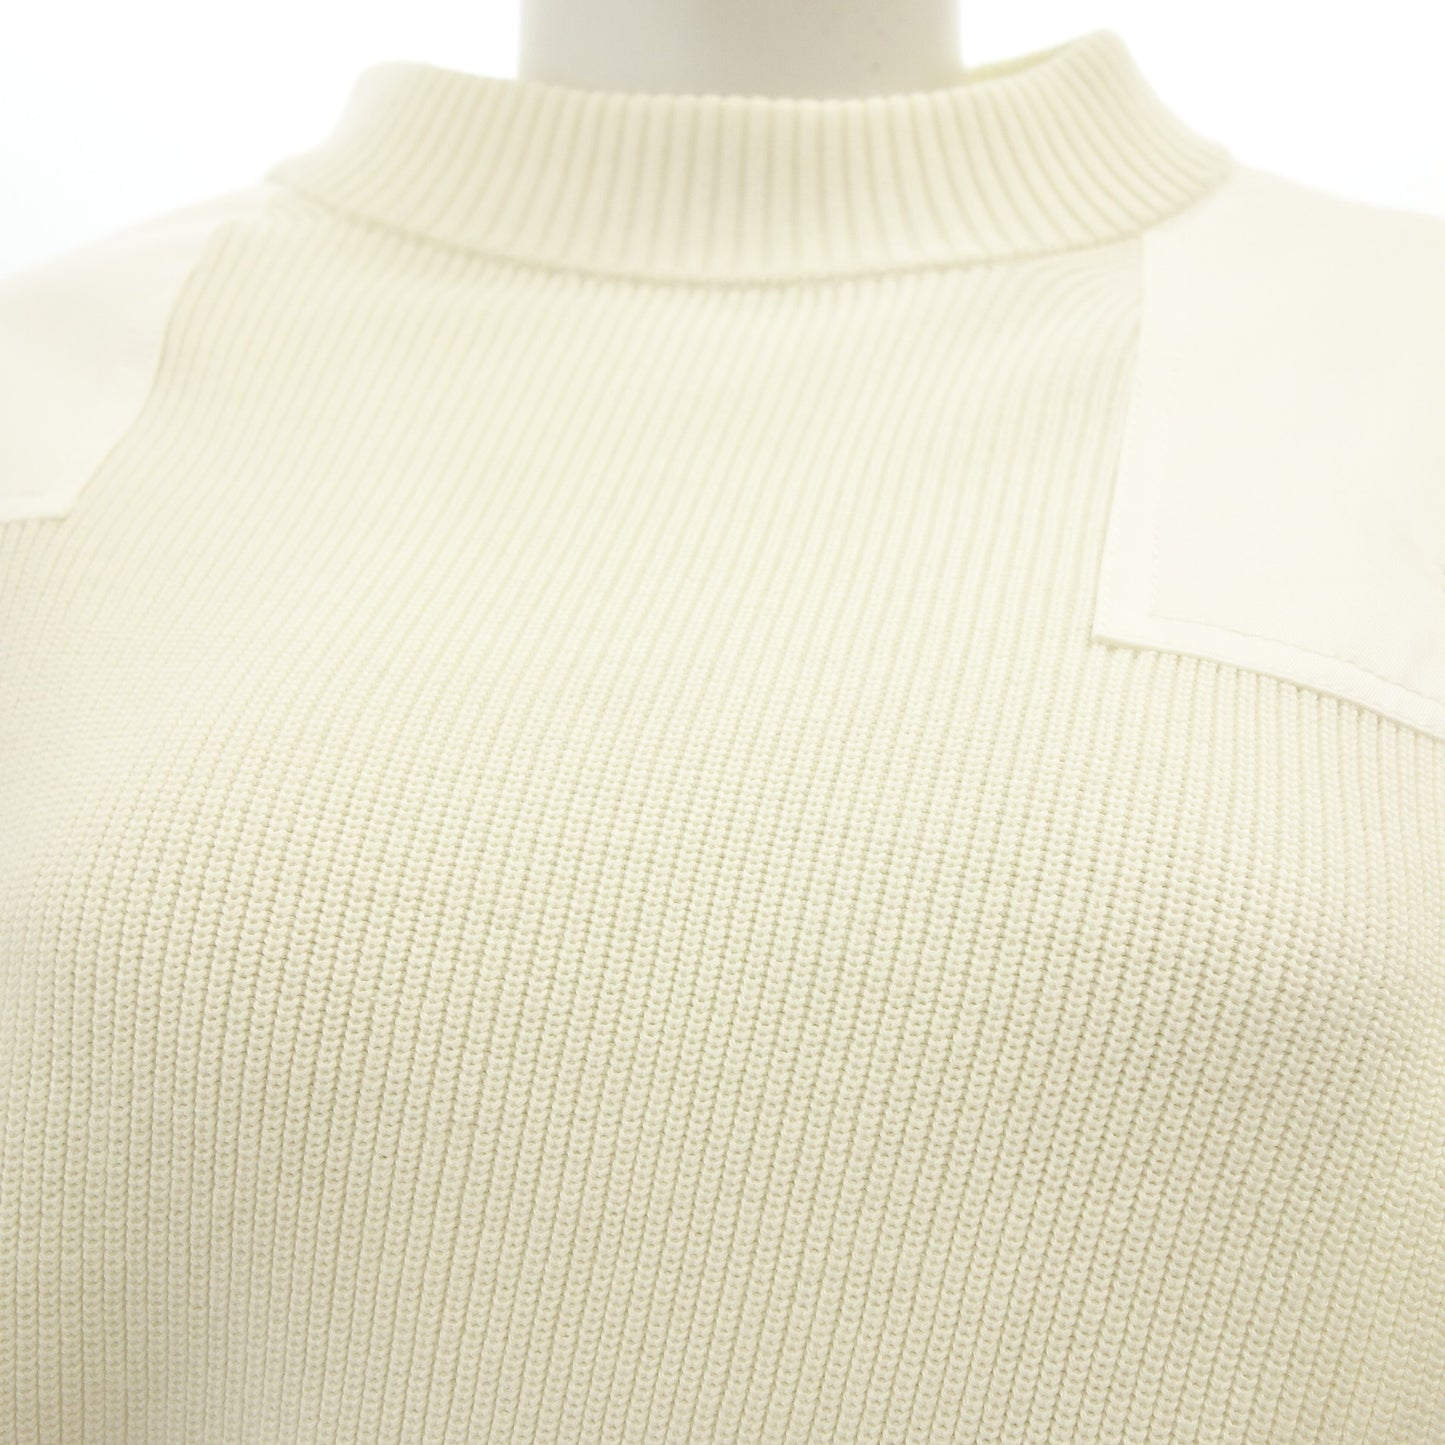 品相良好◆Sacai 针织毛衣不对称金色纽扣蕾丝 19-04424 白色 2 号女式 Sacai [AFB22] 